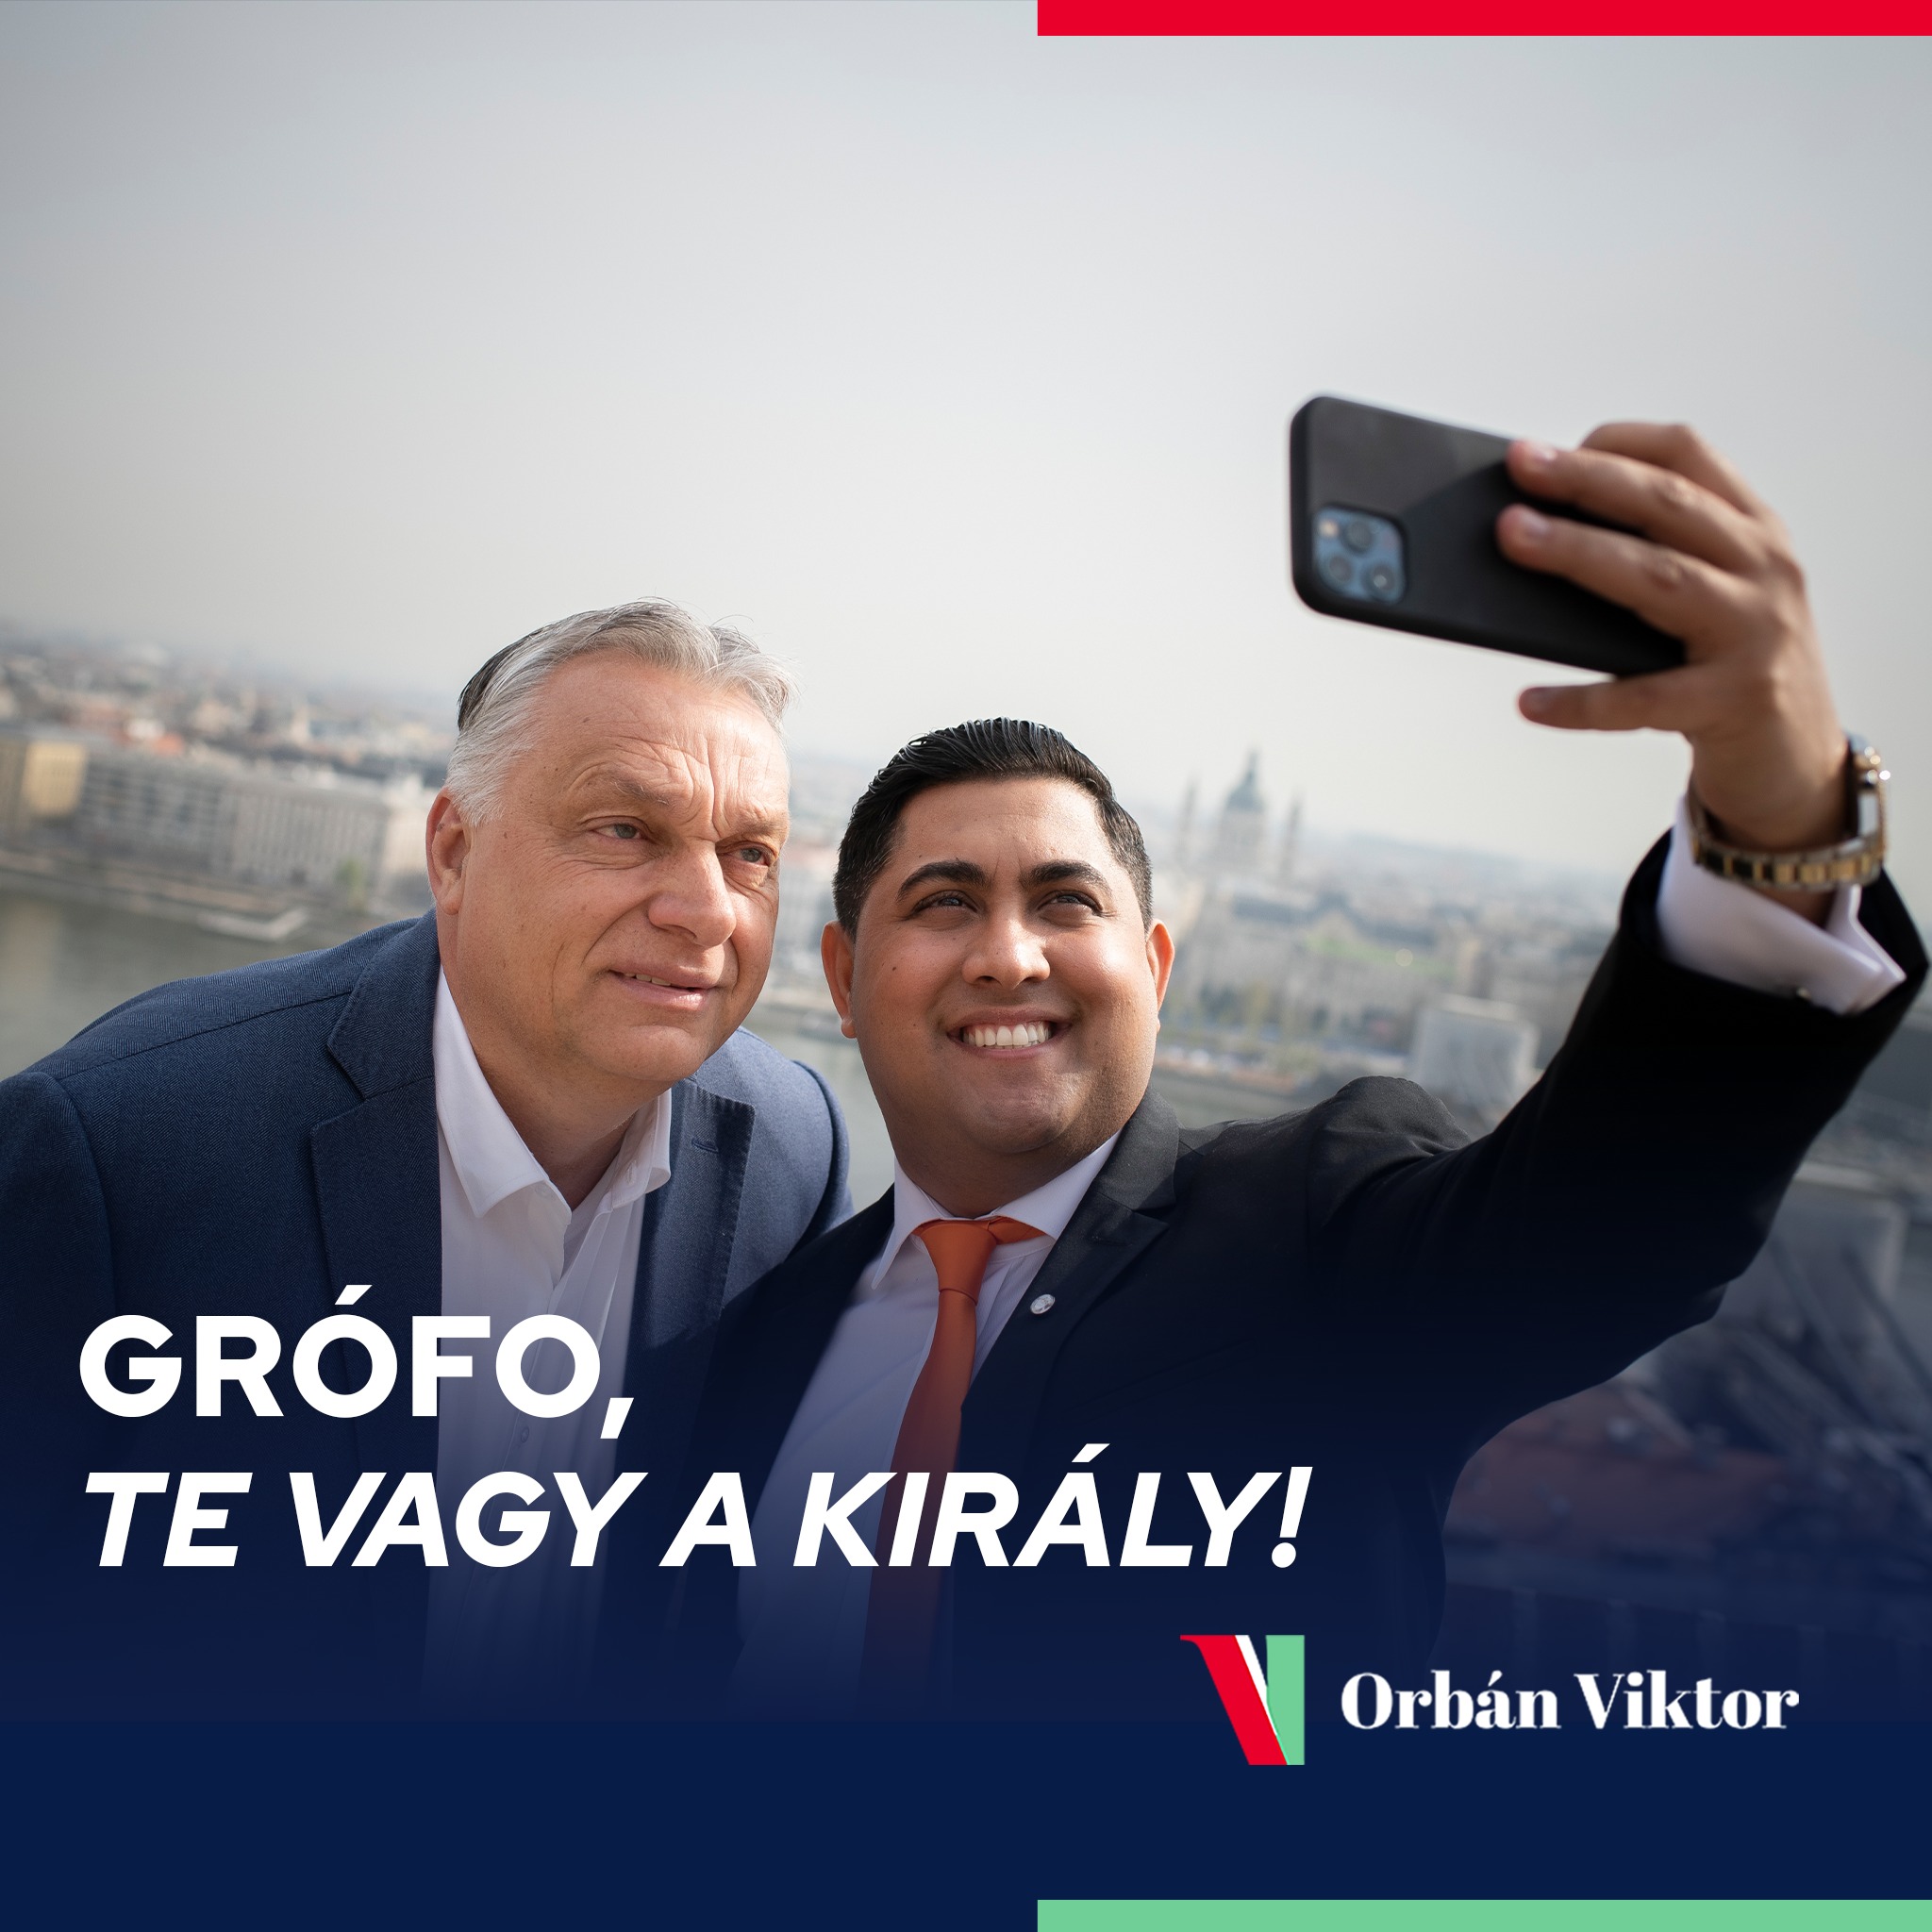 Videó: Orbán Viktor és Kis Grófo speciálban, a Karmelitában